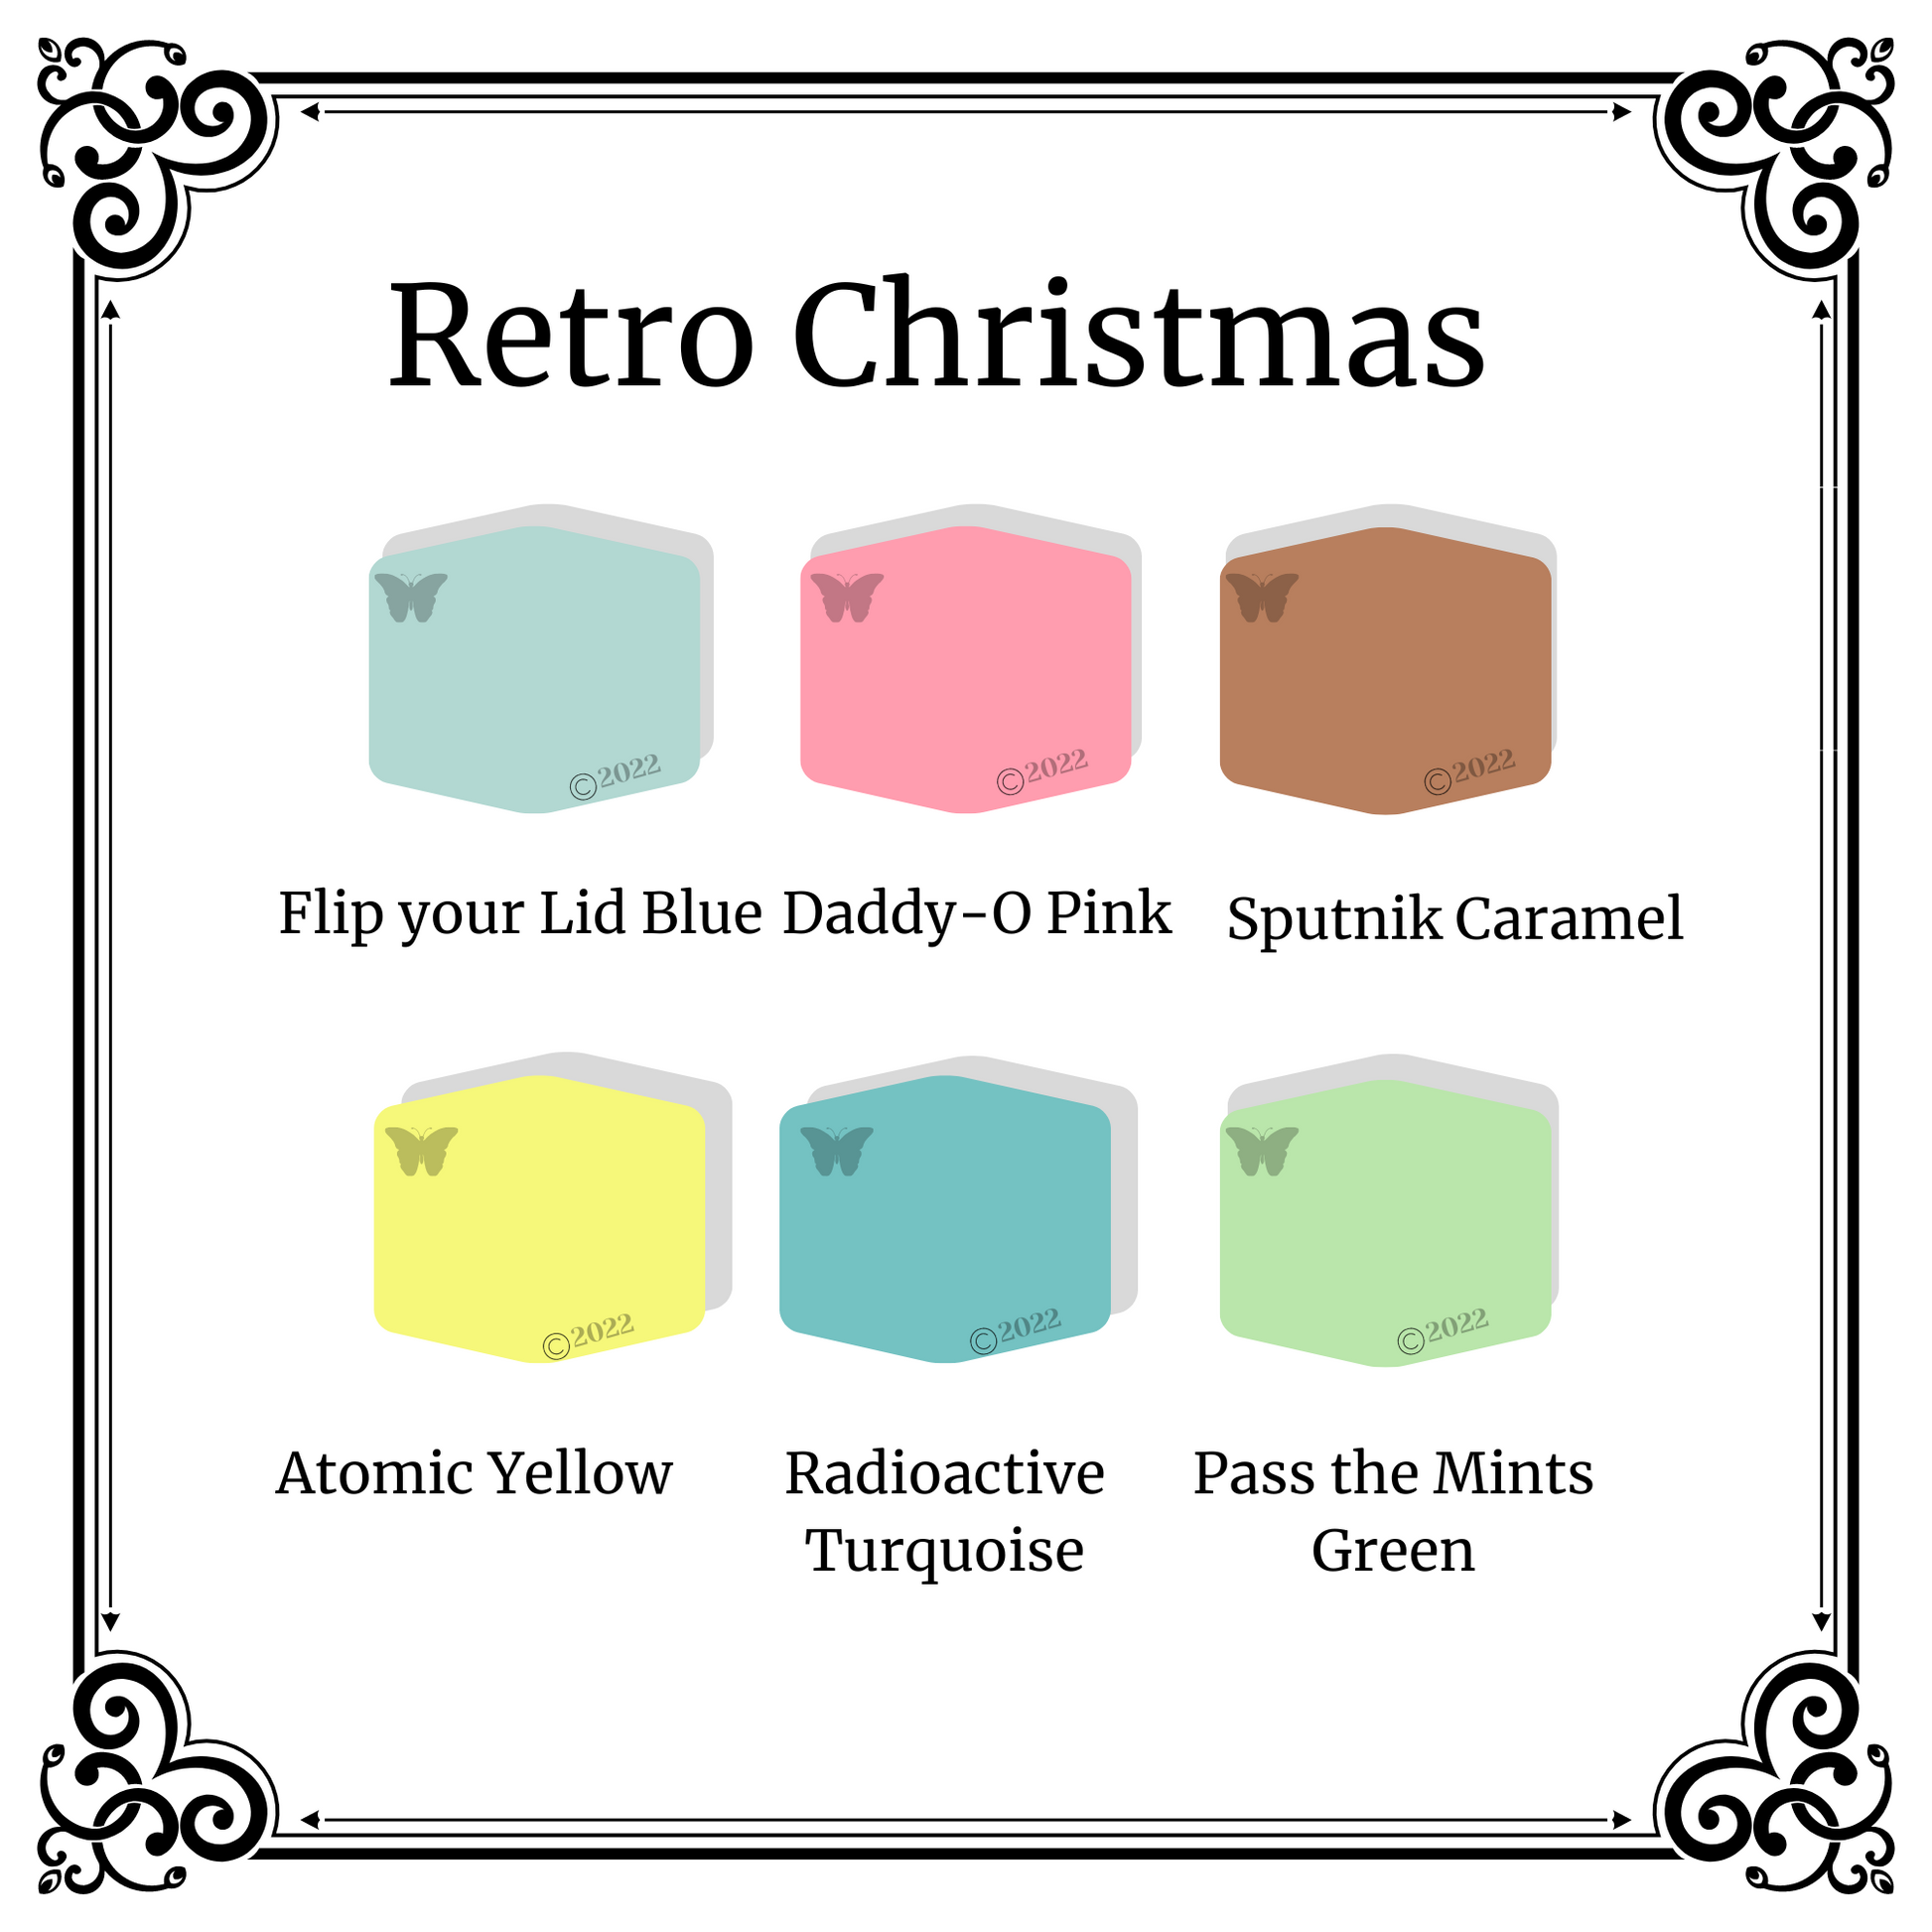 Retro Christmas 6 color palette